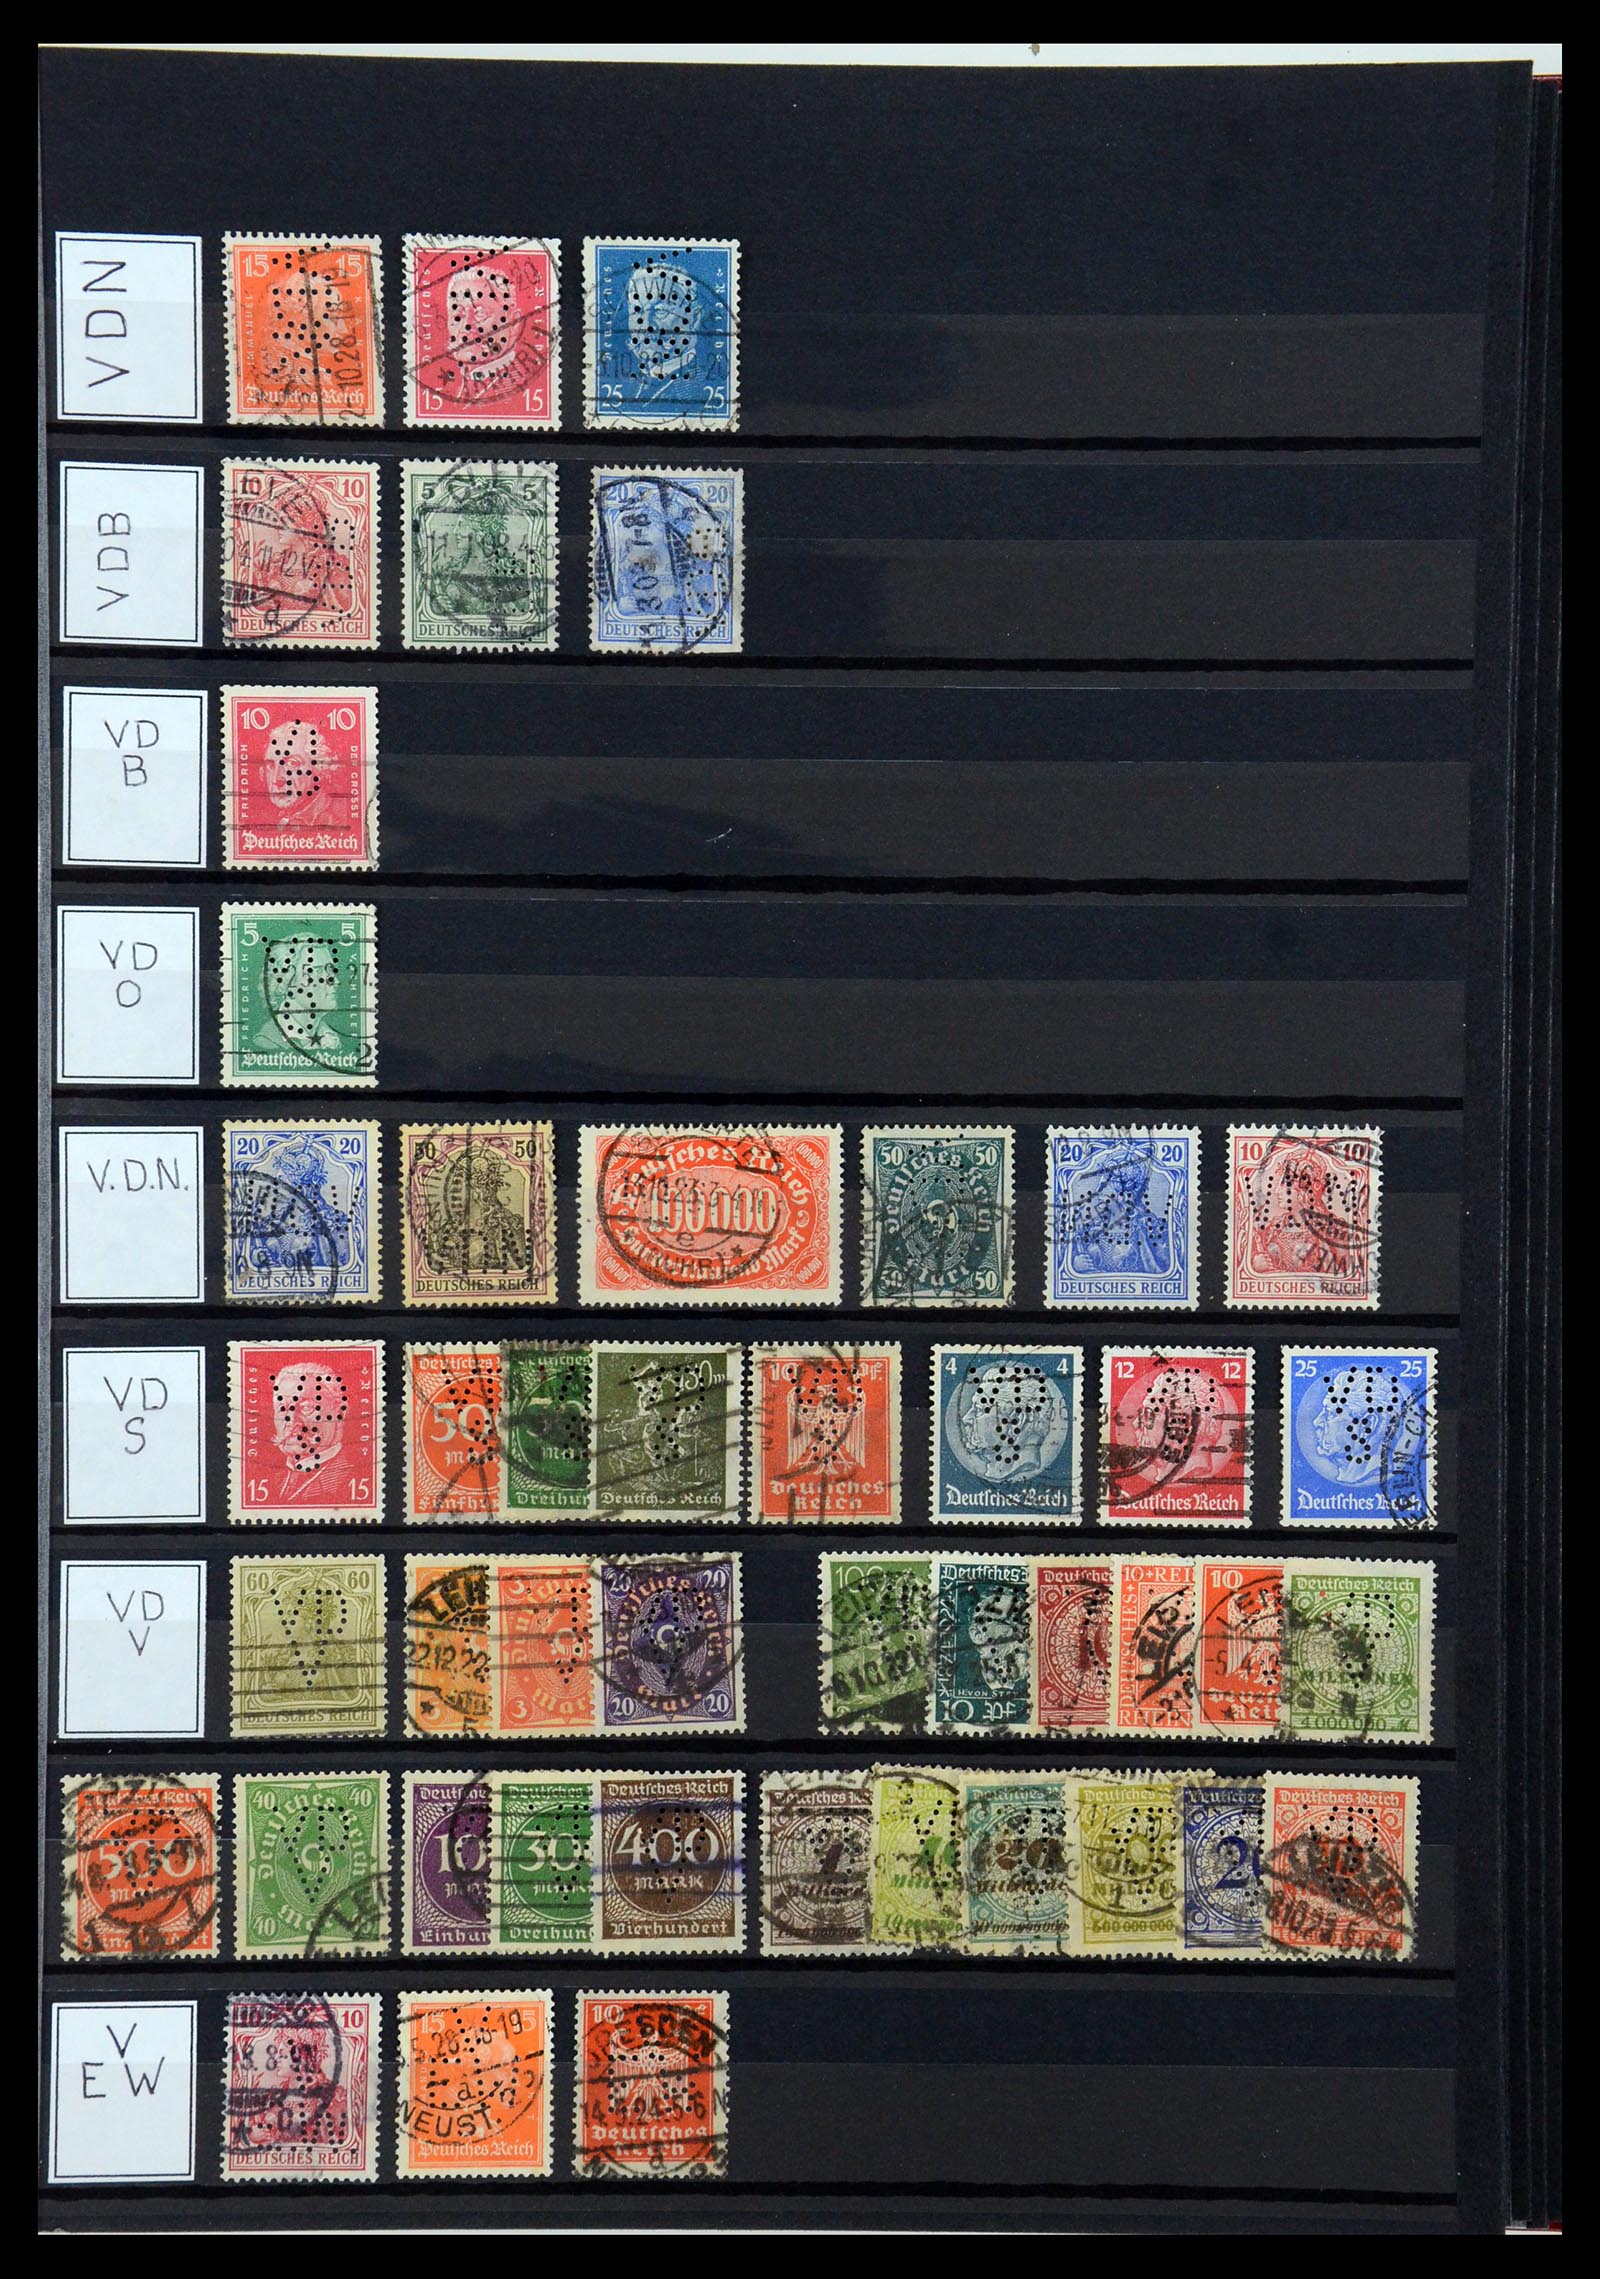 36405 328 - Stamp collection 36405 German Reich perfins 1880-1945.